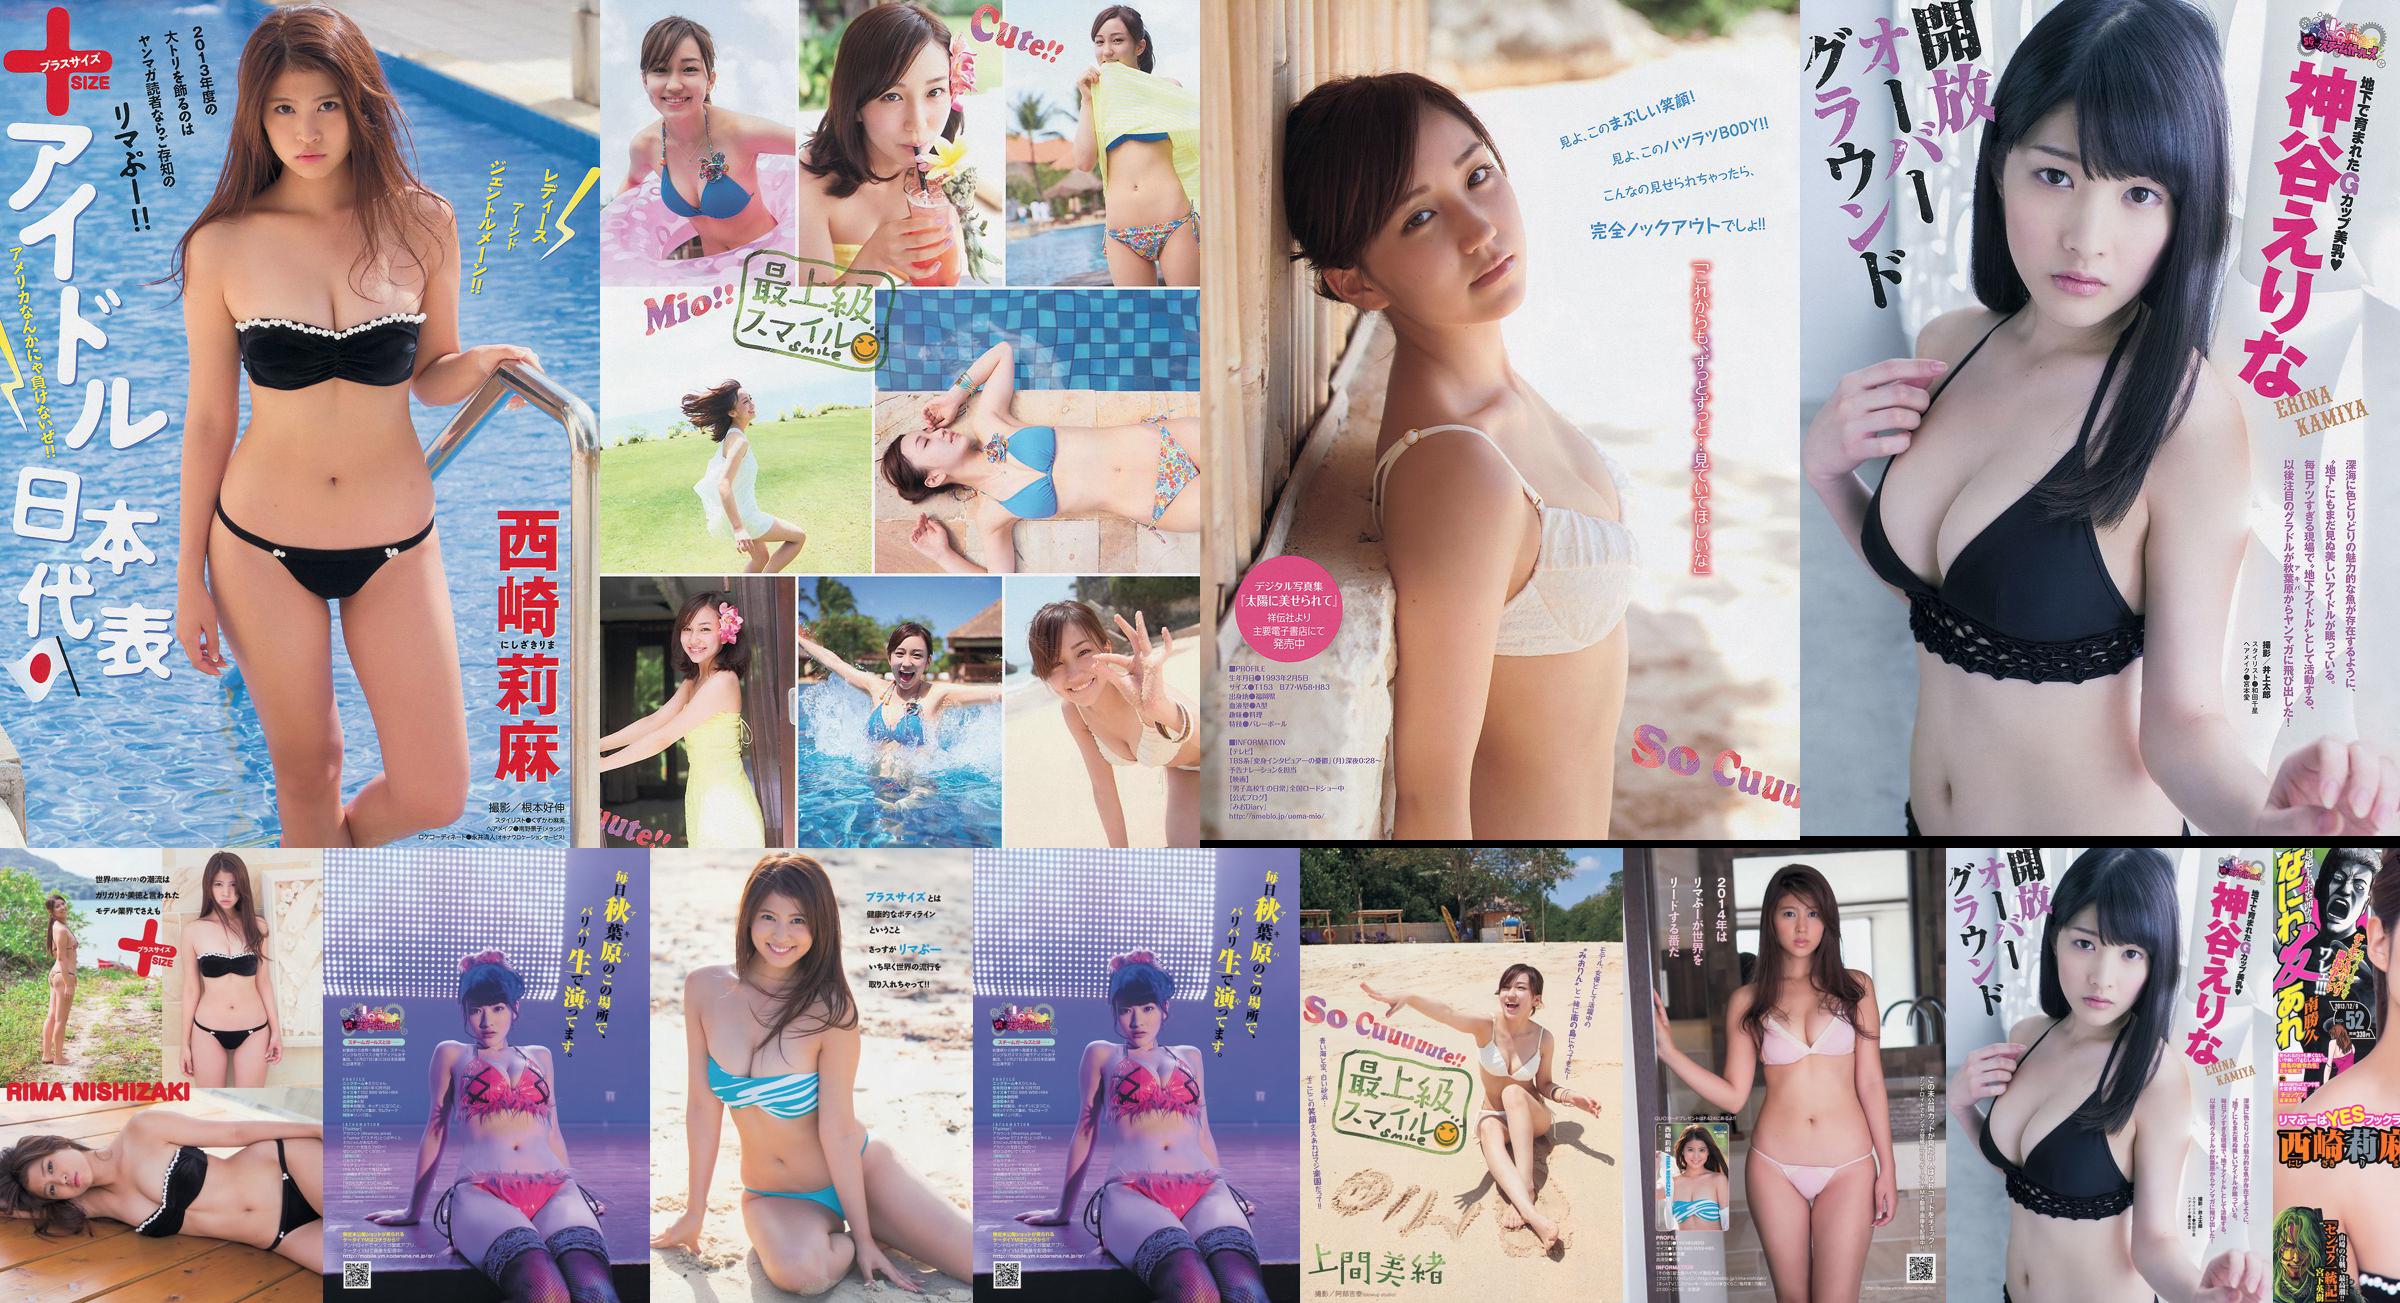 [Young Magazine] Rima Nishizaki Mio Uema Erina Kamiya 2013 No.52 Photo Moshi No.a91b32 Page 1